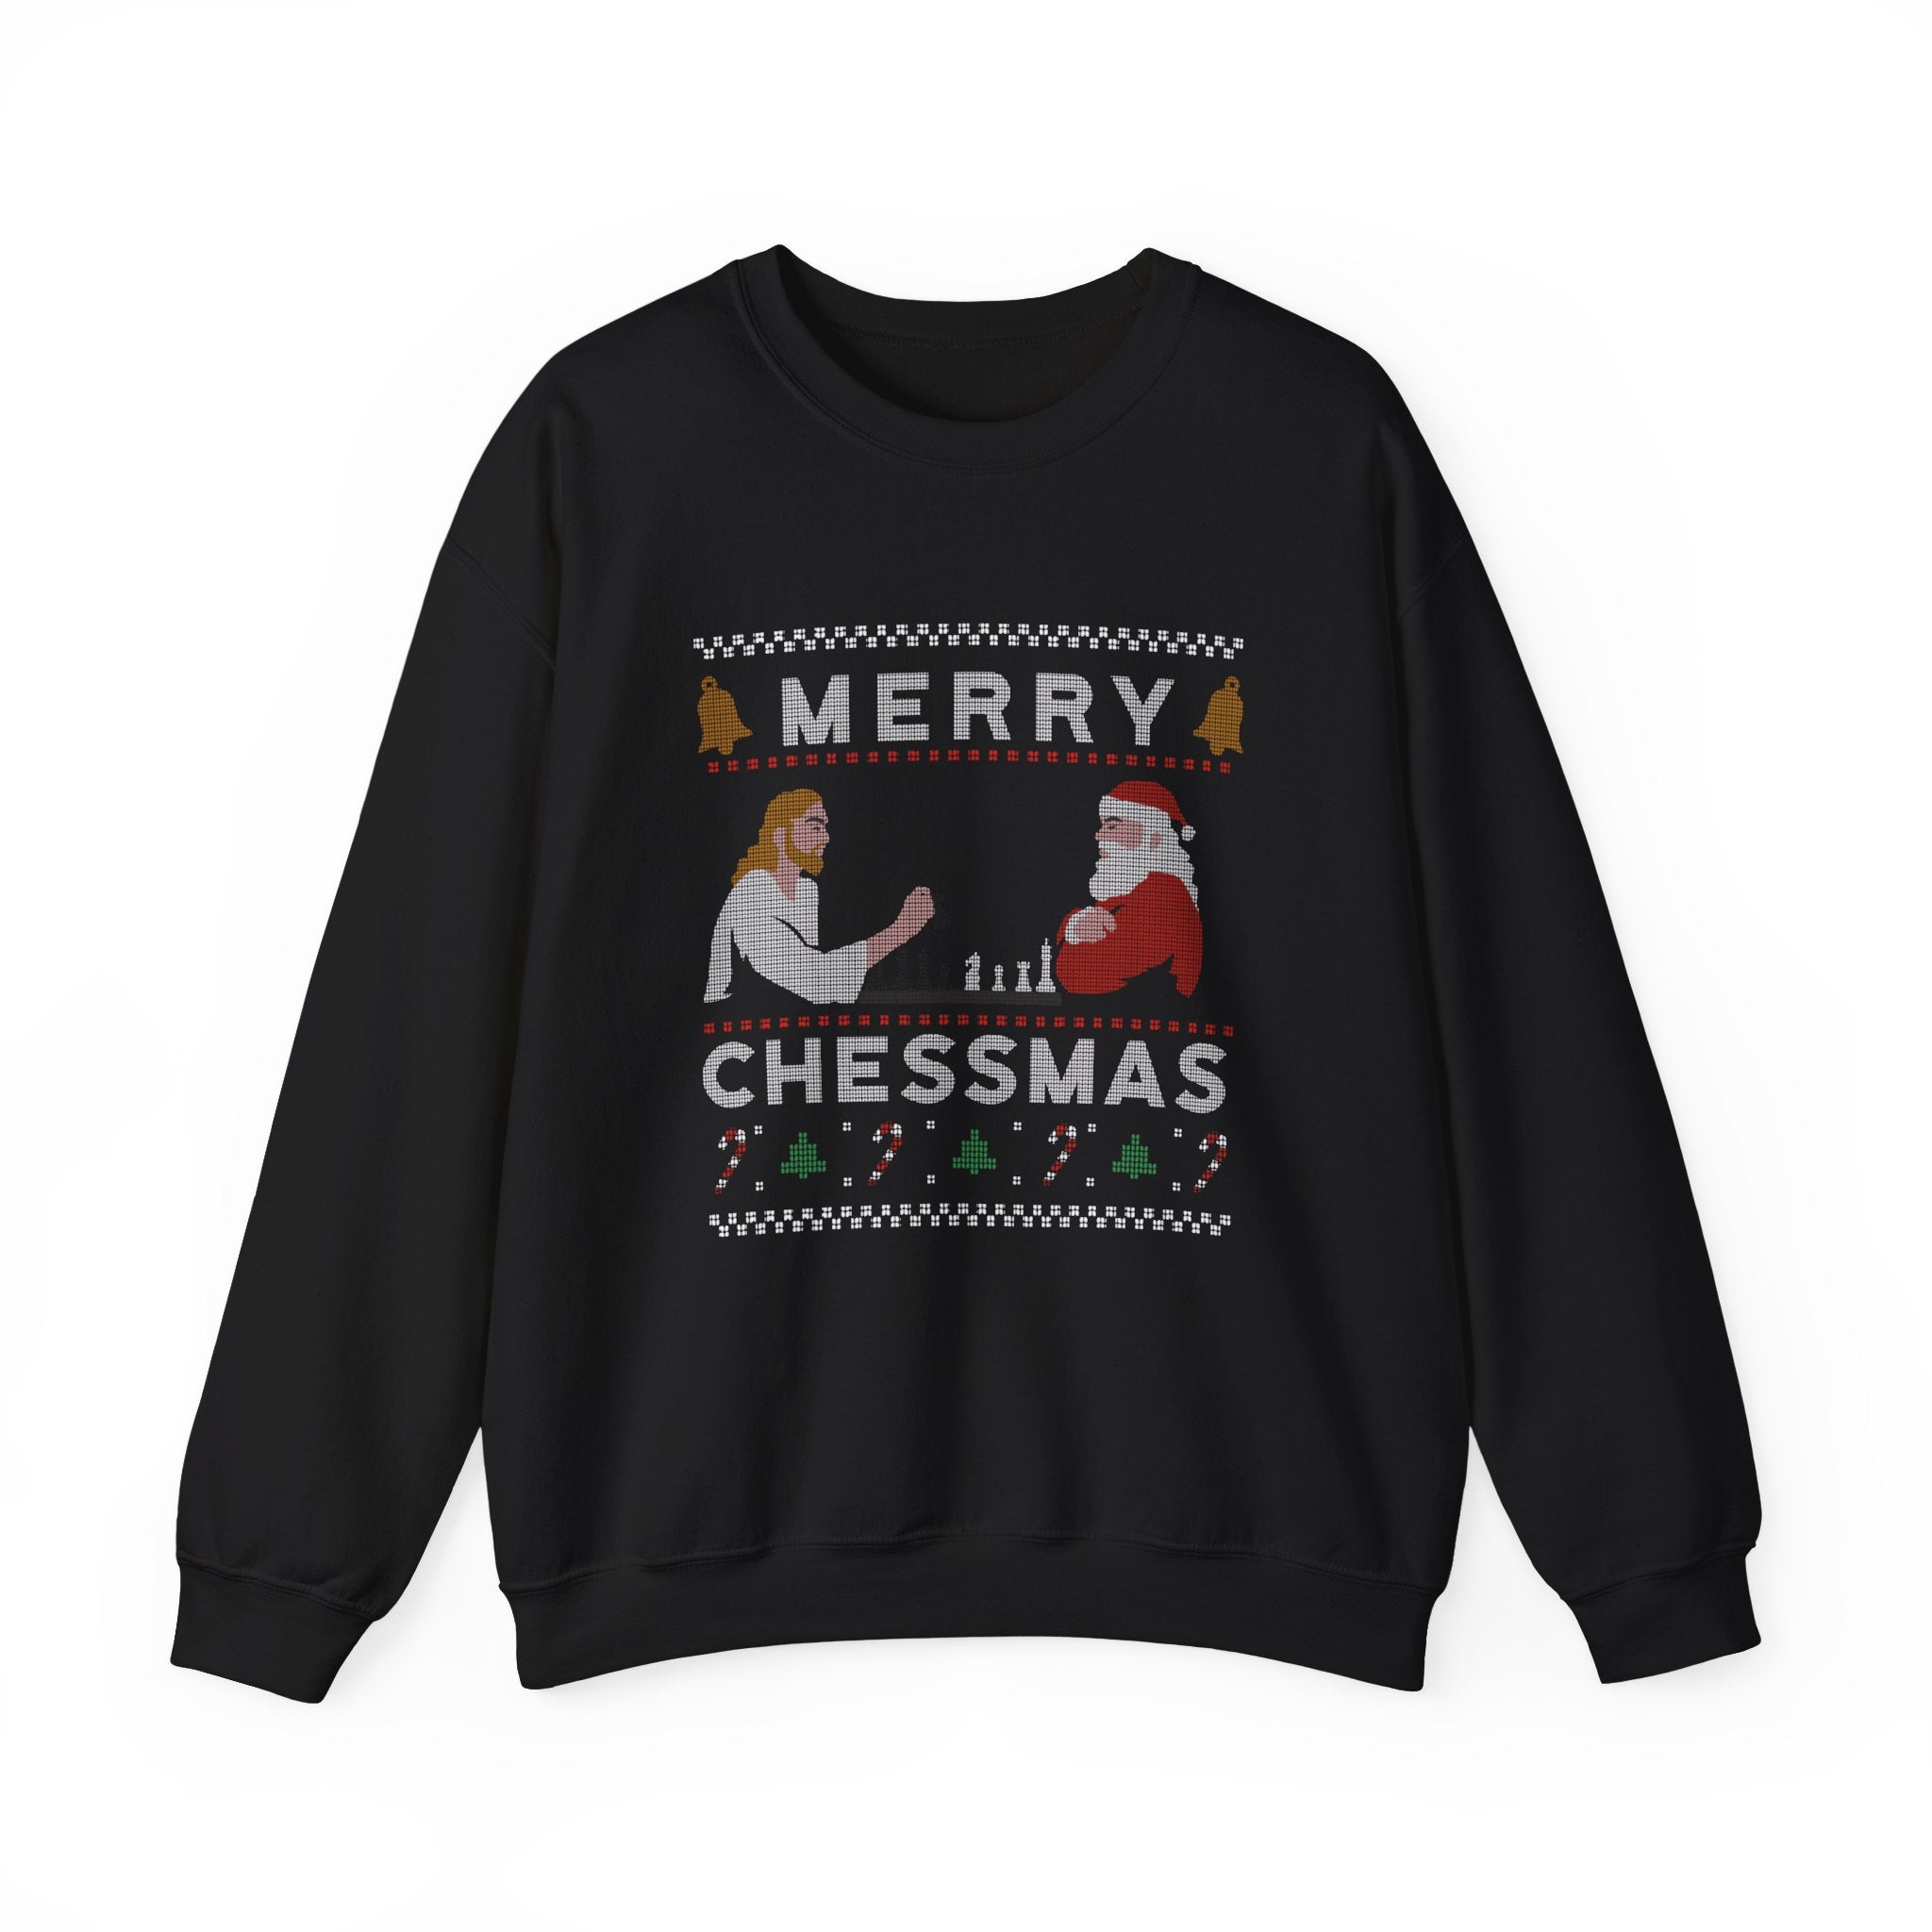 Merry Chessmas -  Sweatshirt